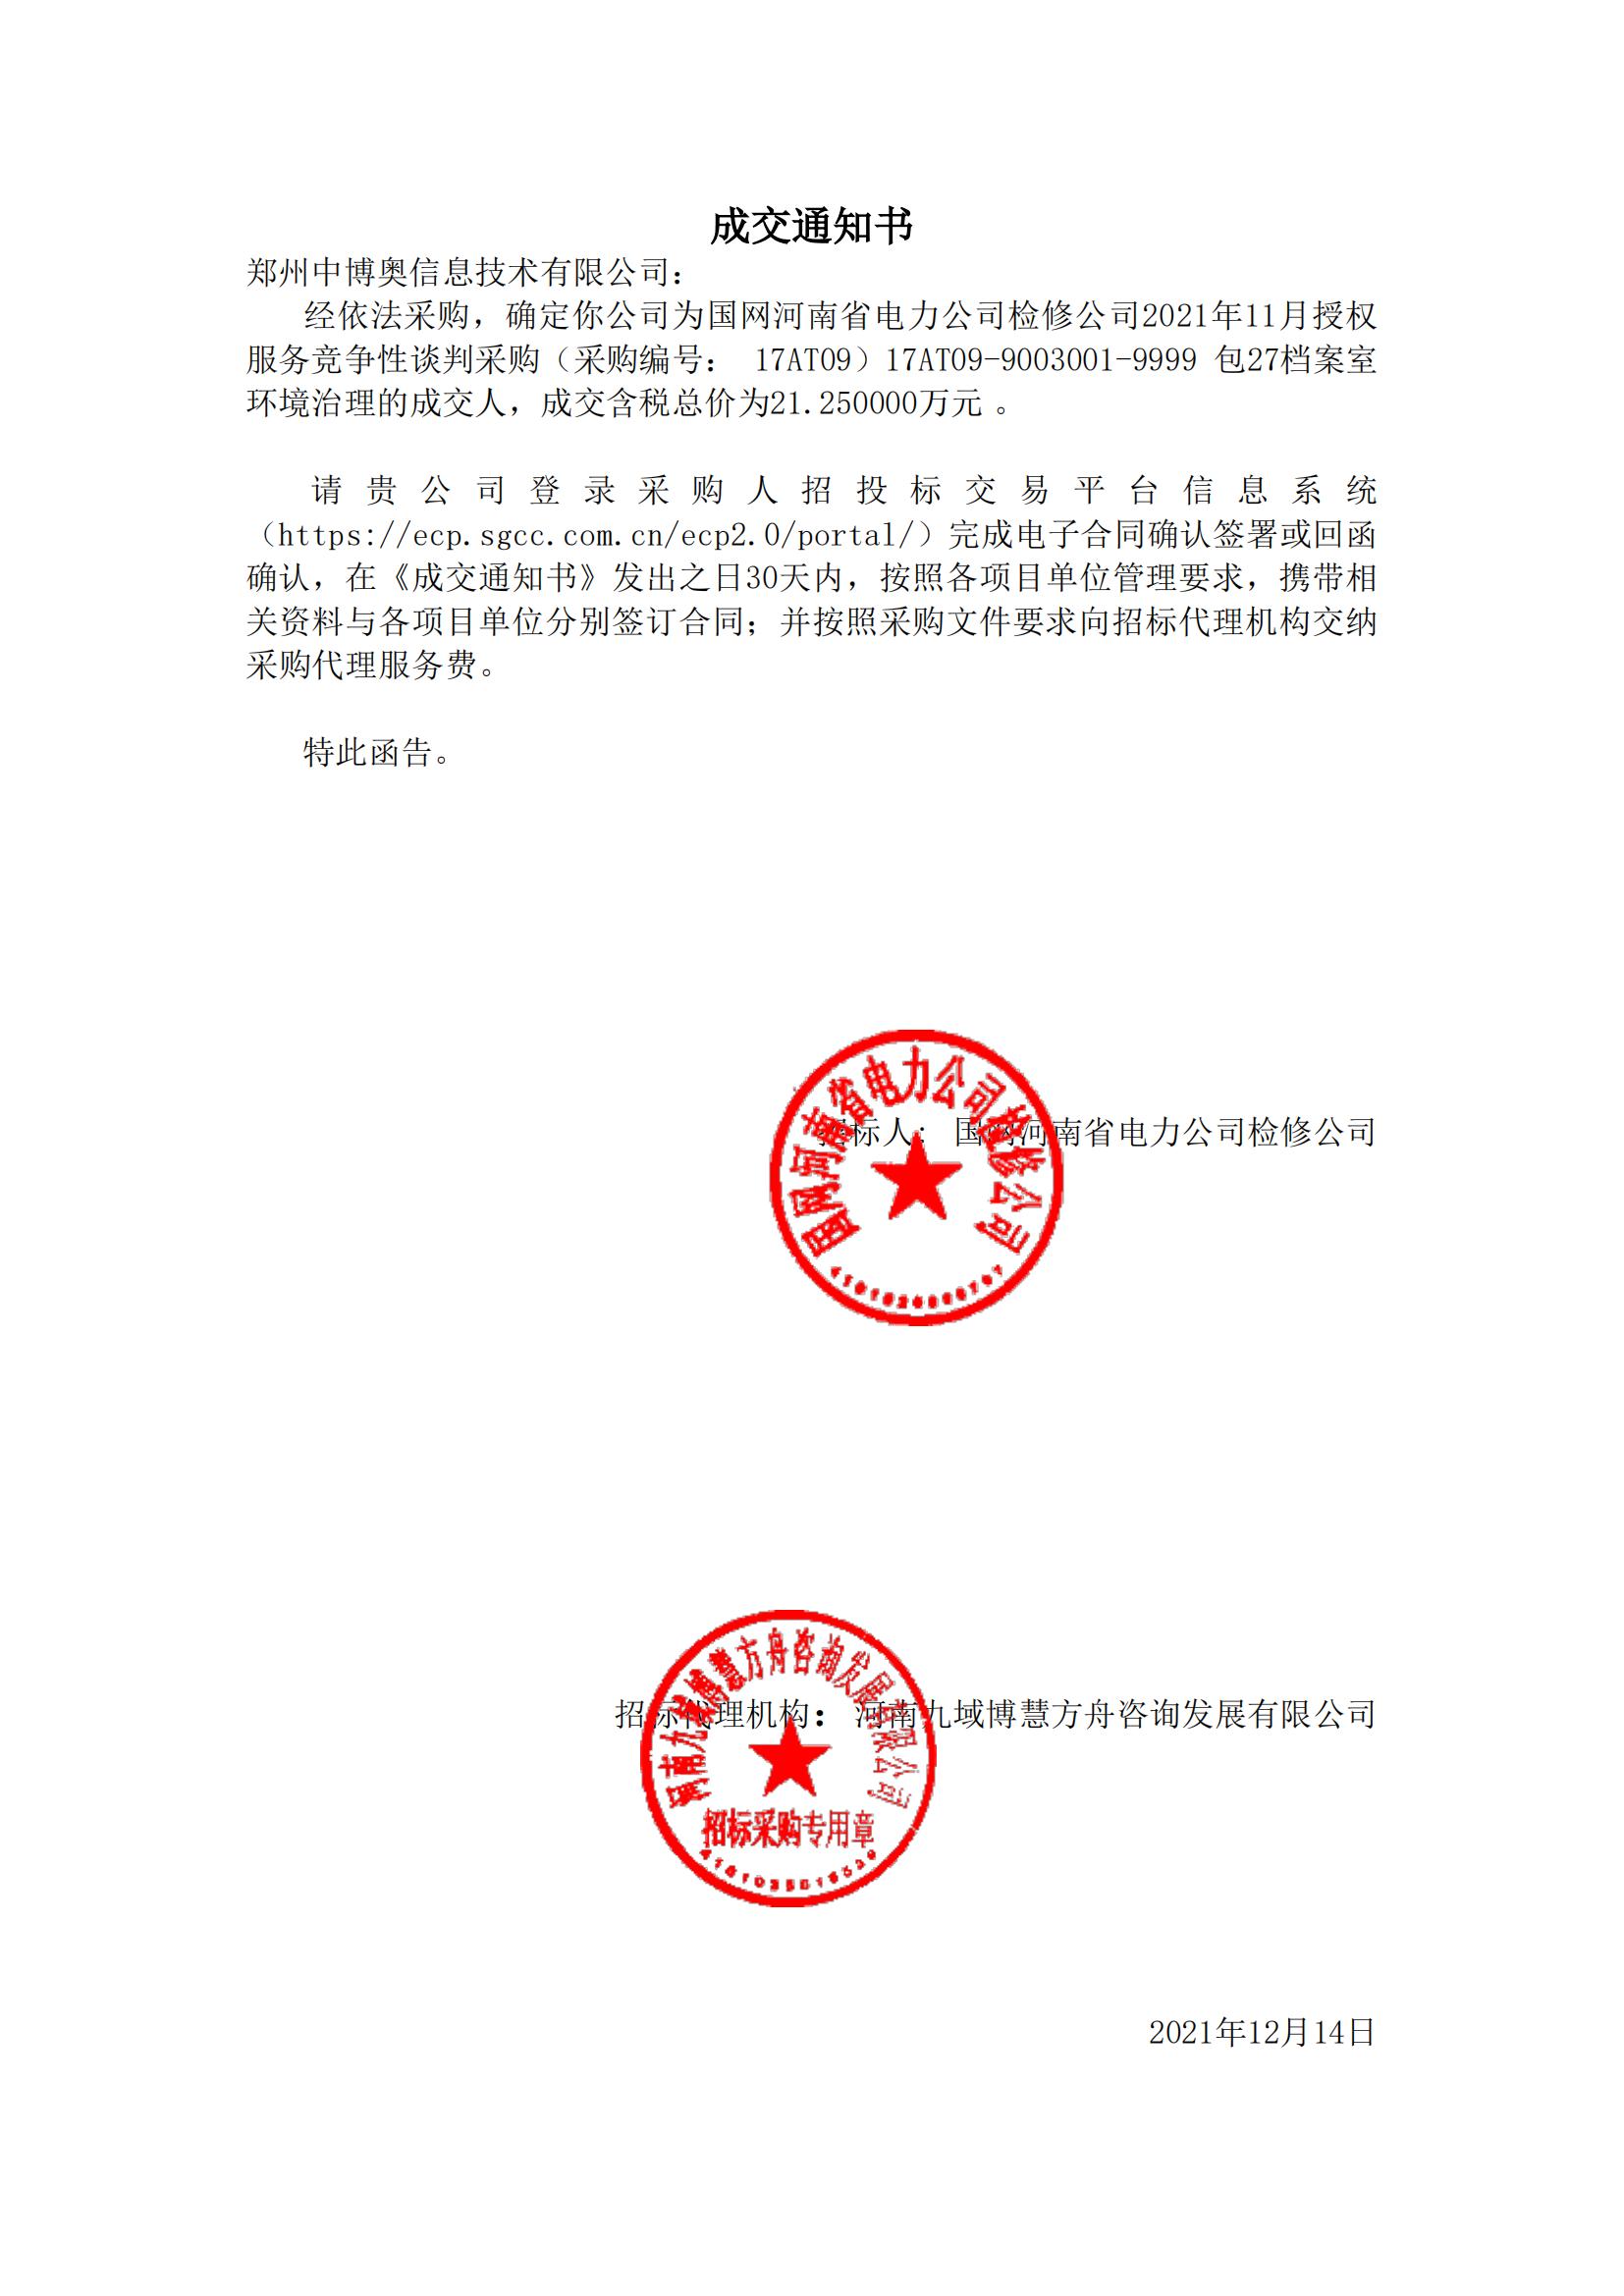 国网河南省电力公司检修公司2021年11月授权服务成交通知